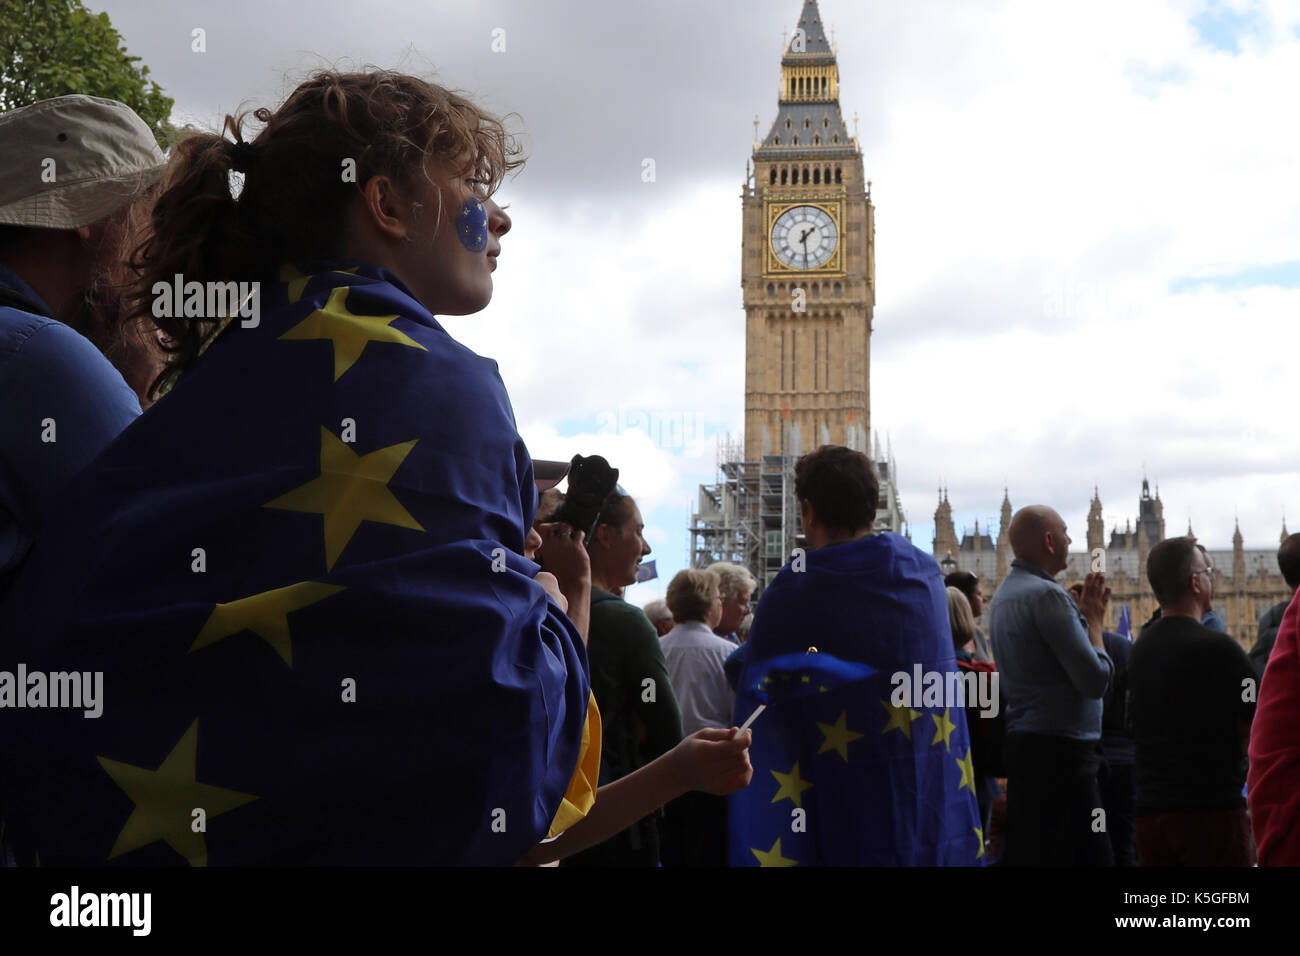 Londra, Regno Unito. Il 9 settembre, 2017. Una ragazza avvolto in una bandiera UE sorge in Piazza del Parlamento giardino in Westminster, Londra centrale, durante il popolo del marzo per l'Europa, un anti-Brexit rally, il 9 settembre 2017. La torre dell'orologio del Big Ben è in background. Credito: Dominic Dudley/Alamy Live News Foto Stock